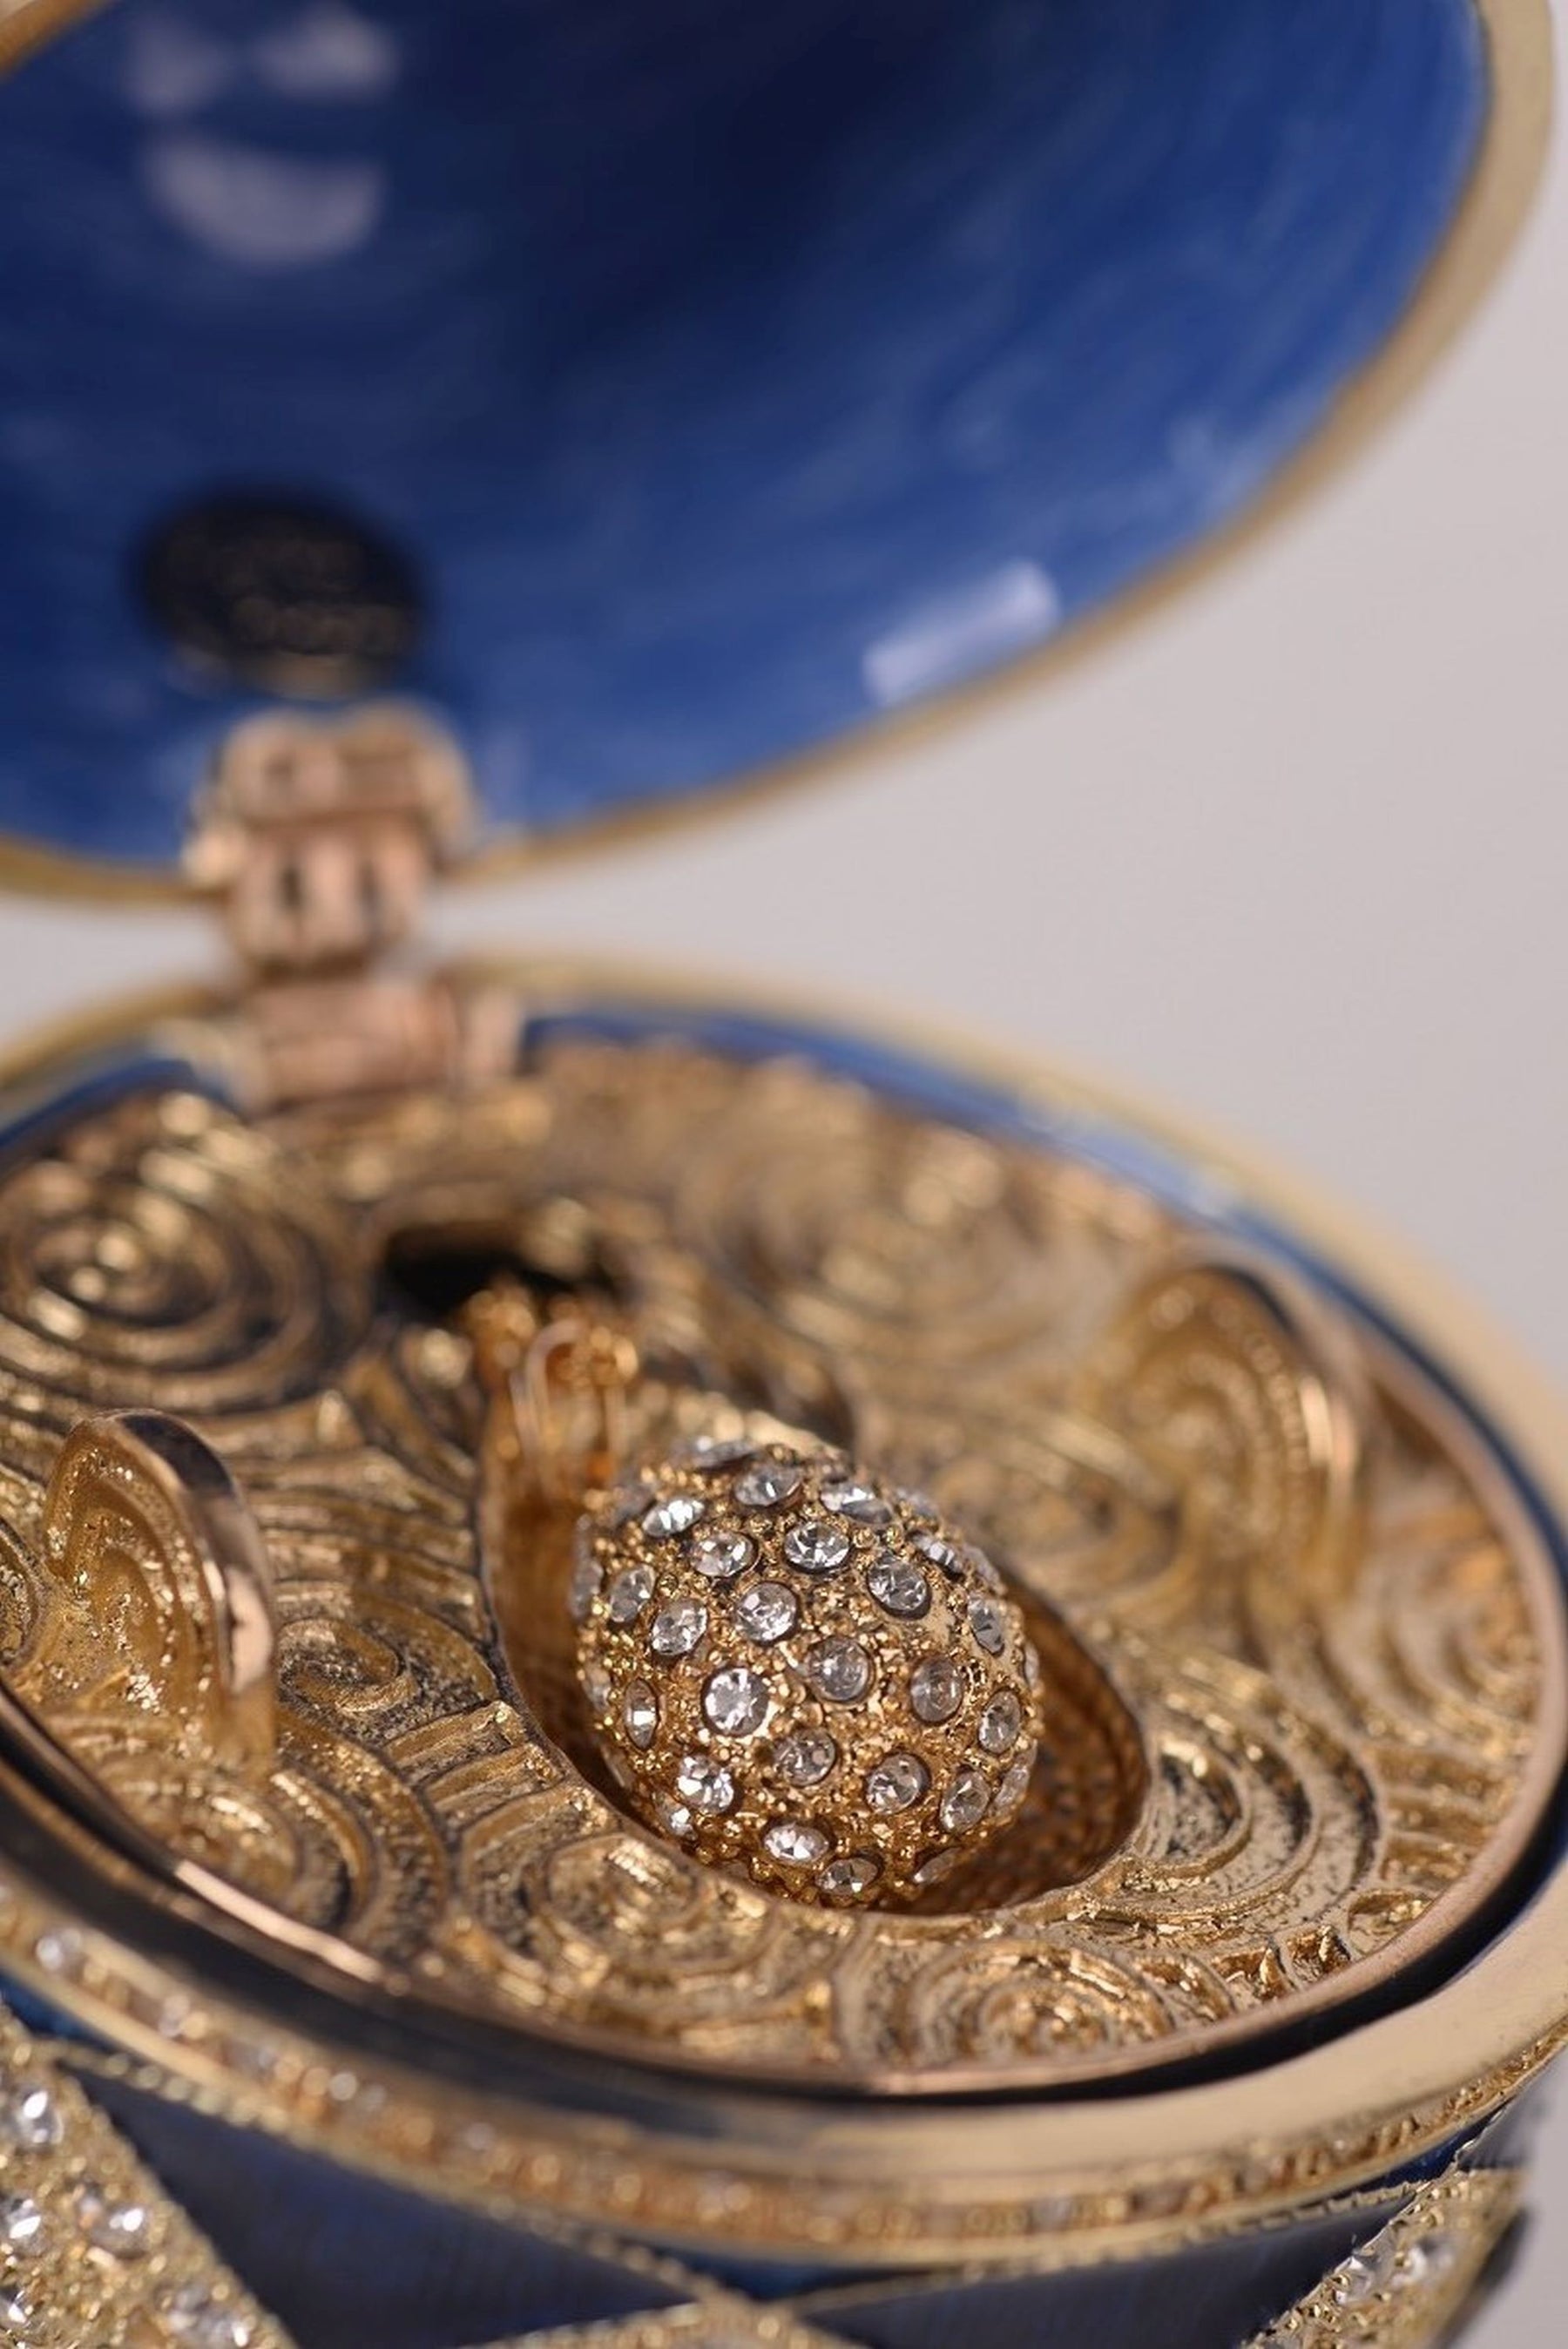 Oeuf Fabergé bleu avec pendentif œuf à l'intérieur